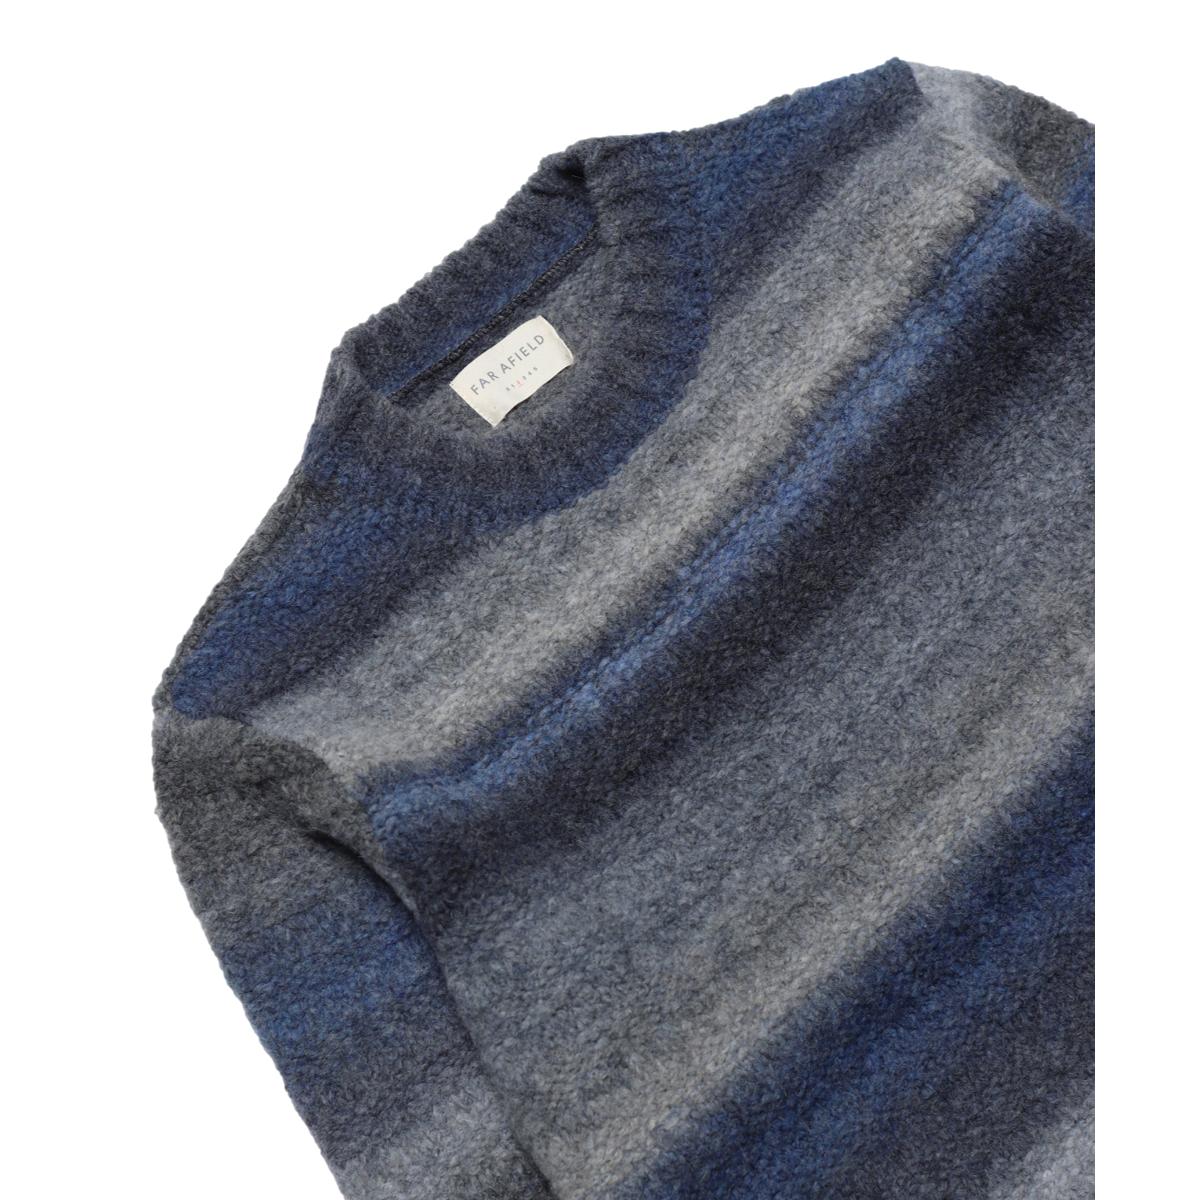 Hosono Knit Ombre Stripe - Sweater